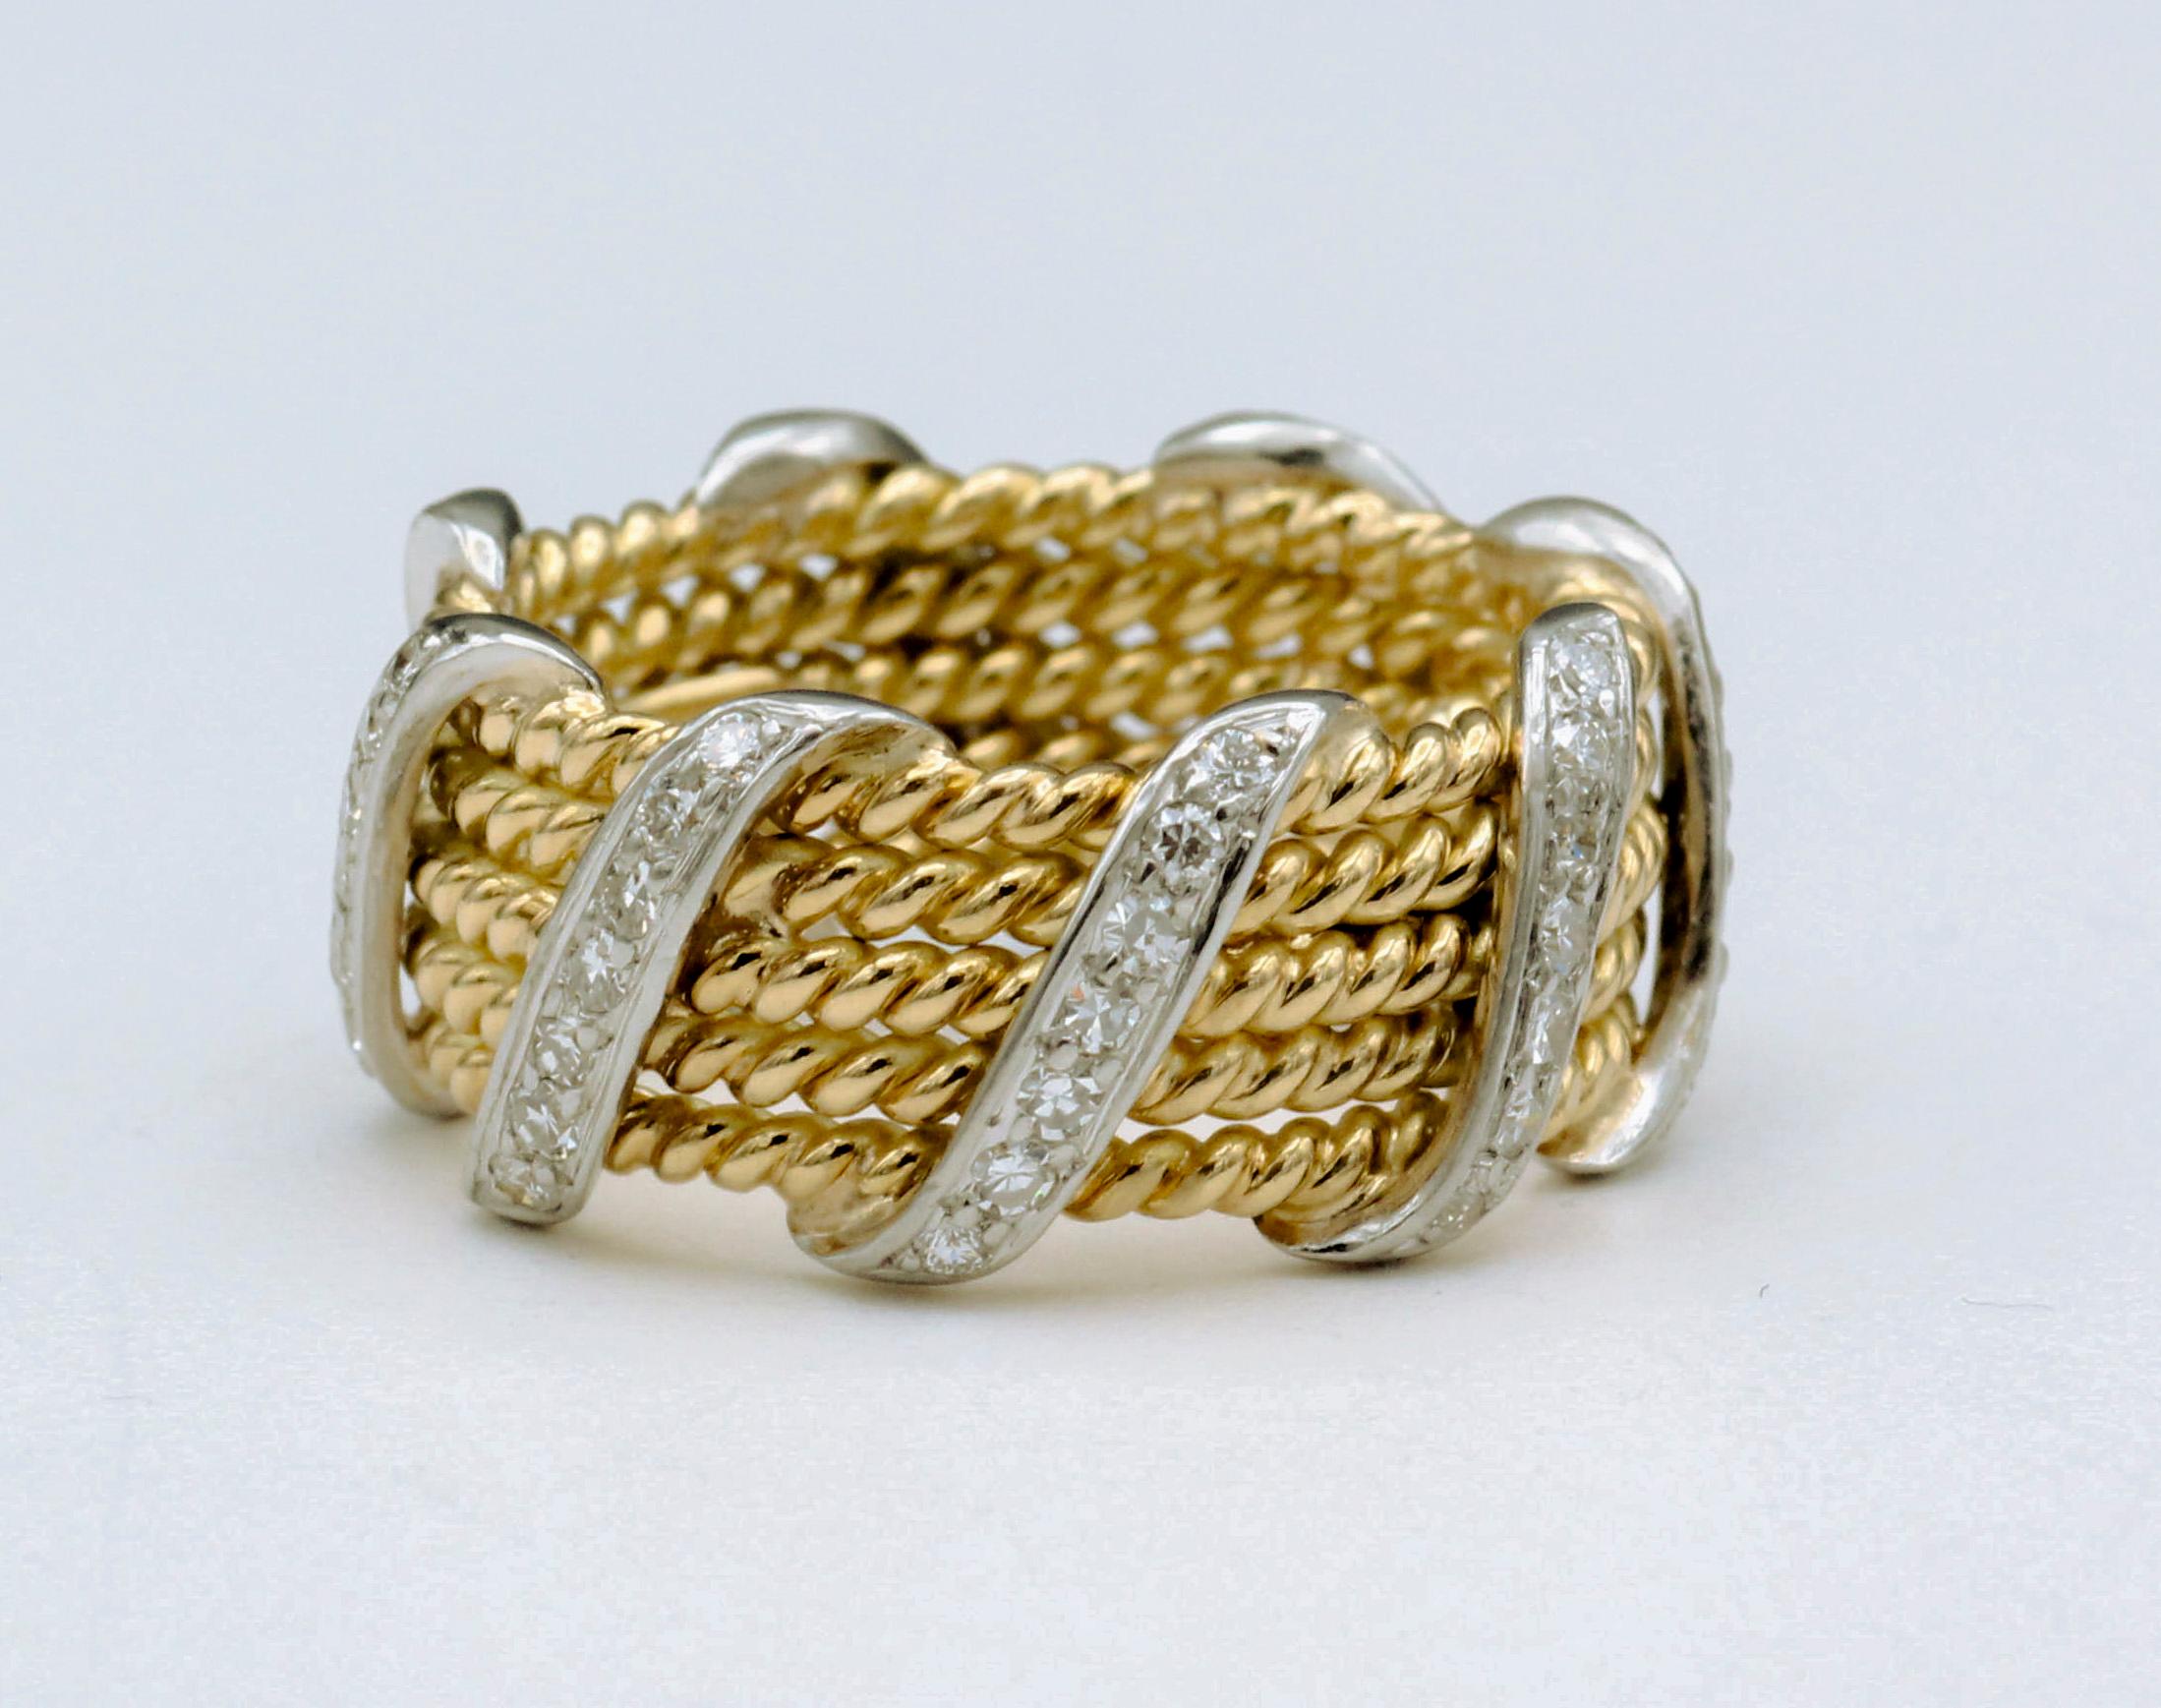 Die Tiffany & Co. Der Schlumberger 18K Gelbgold 5 Ropes Ring ist ein exquisites Meisterwerk, das klassische Eleganz und avantgardistisches Design harmonisch miteinander verbindet. Dieser Ring ist ein glänzendes Beispiel für die geniale Collaboration